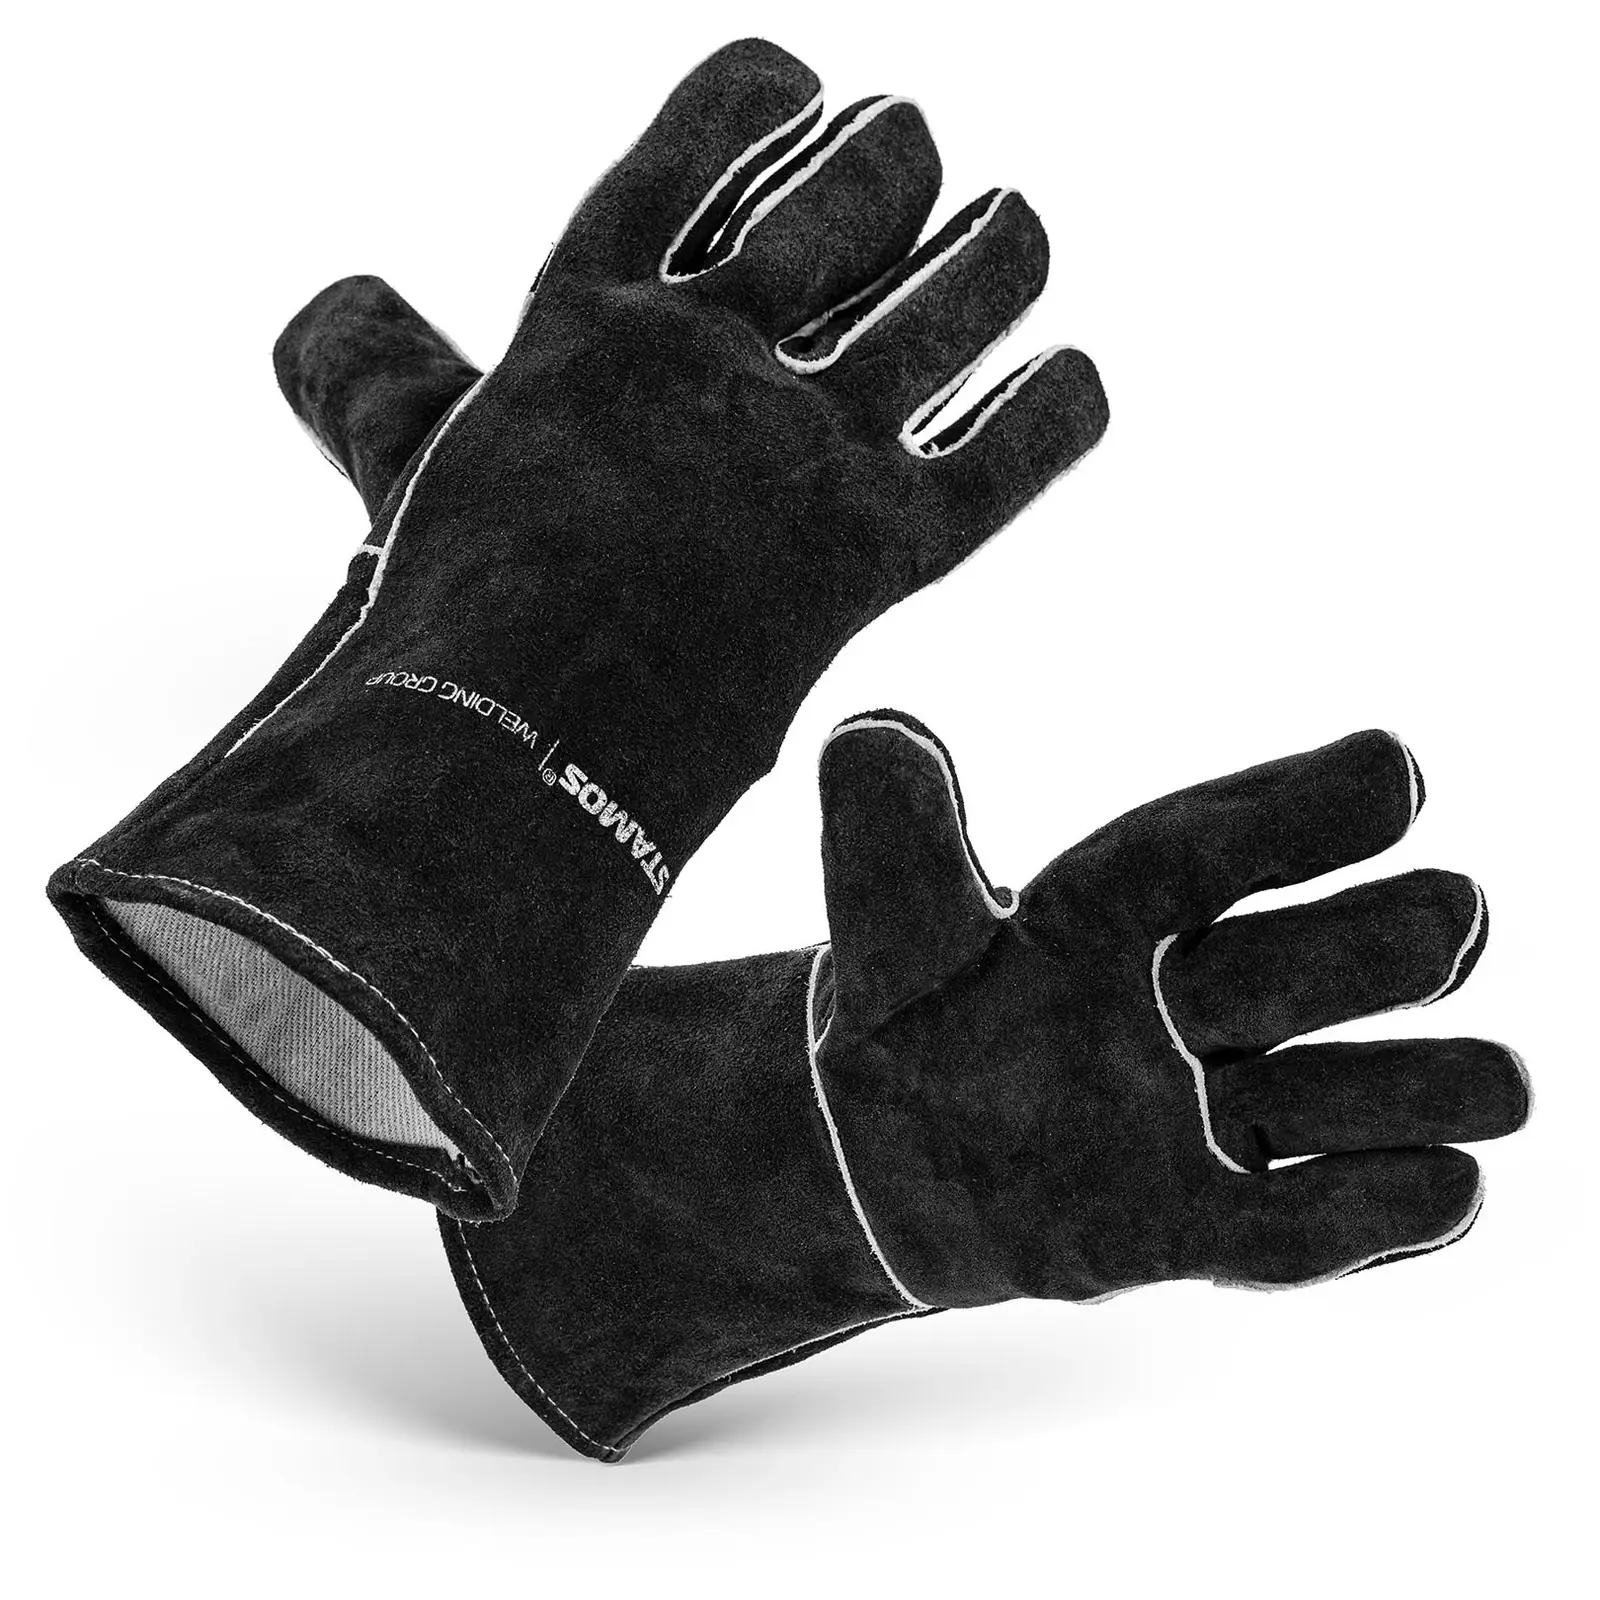 Welding Gloves - size XXL - 34 x 19 cm